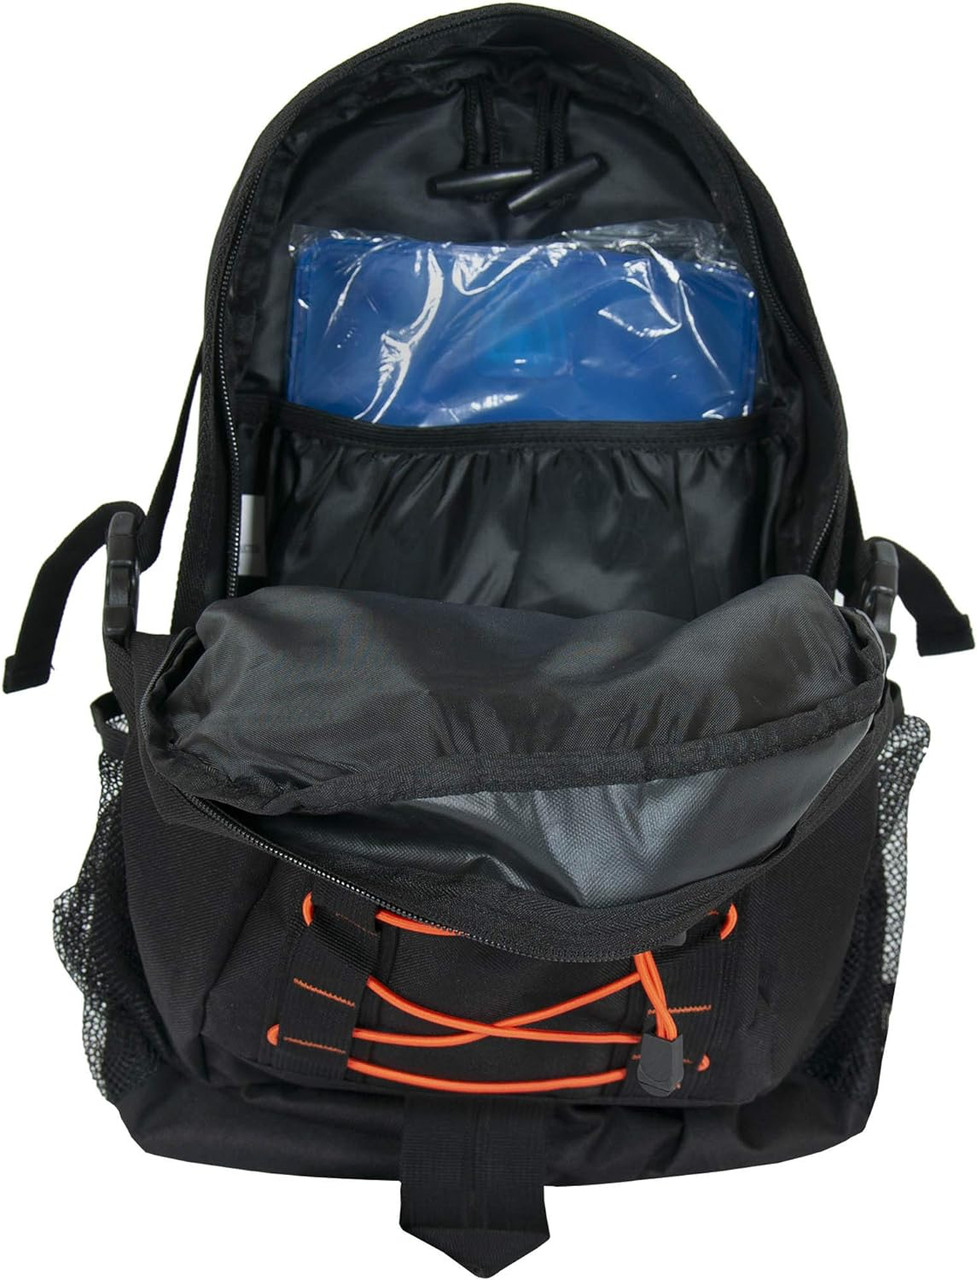 WFS Desert Springs 2L Hydration Daypack Backpack